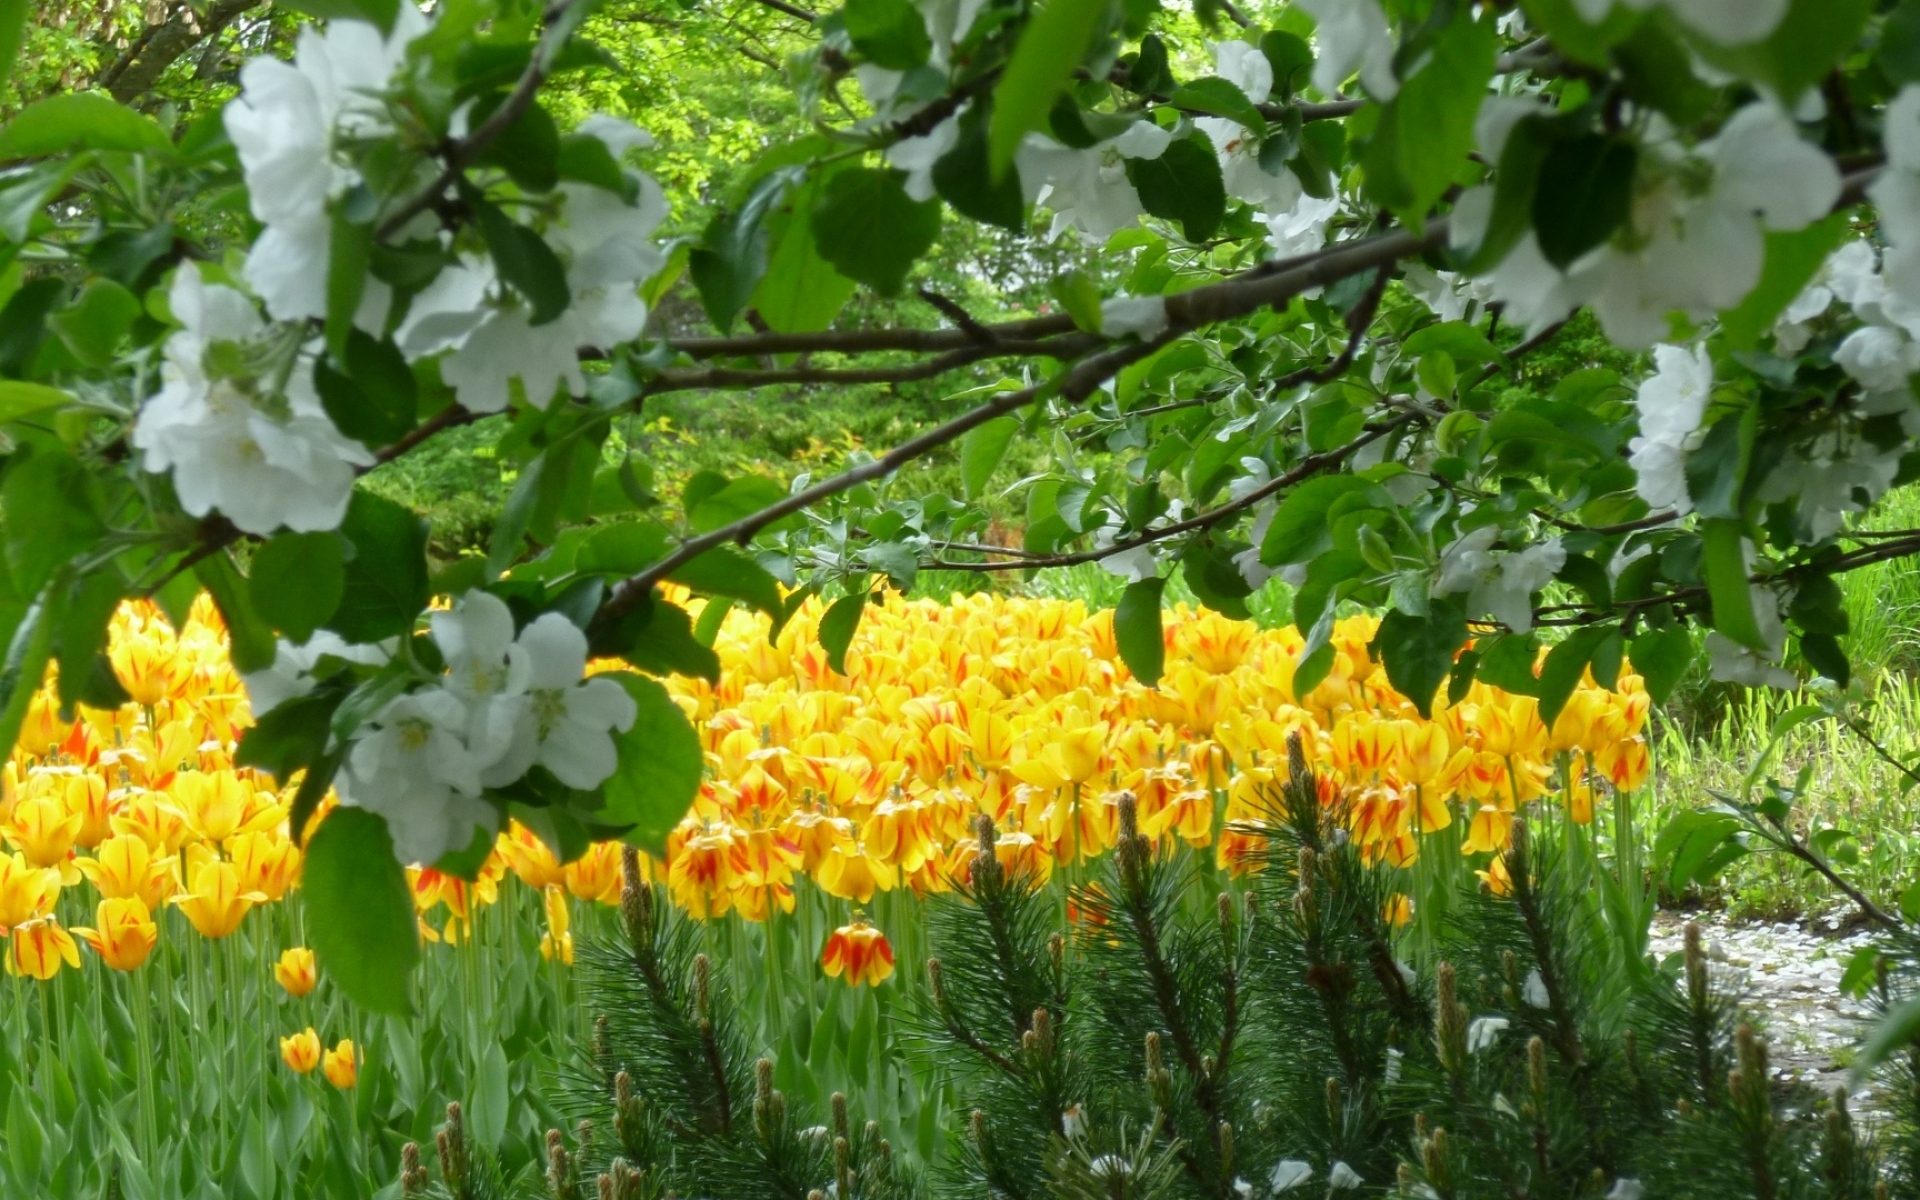 Трава красиво пестрела распустившимися недавно цветами. Нарциссы в Аптекарском огороде. Магнолия тюльпановое дерево. Весенние цветы в саду. Весенний сад.